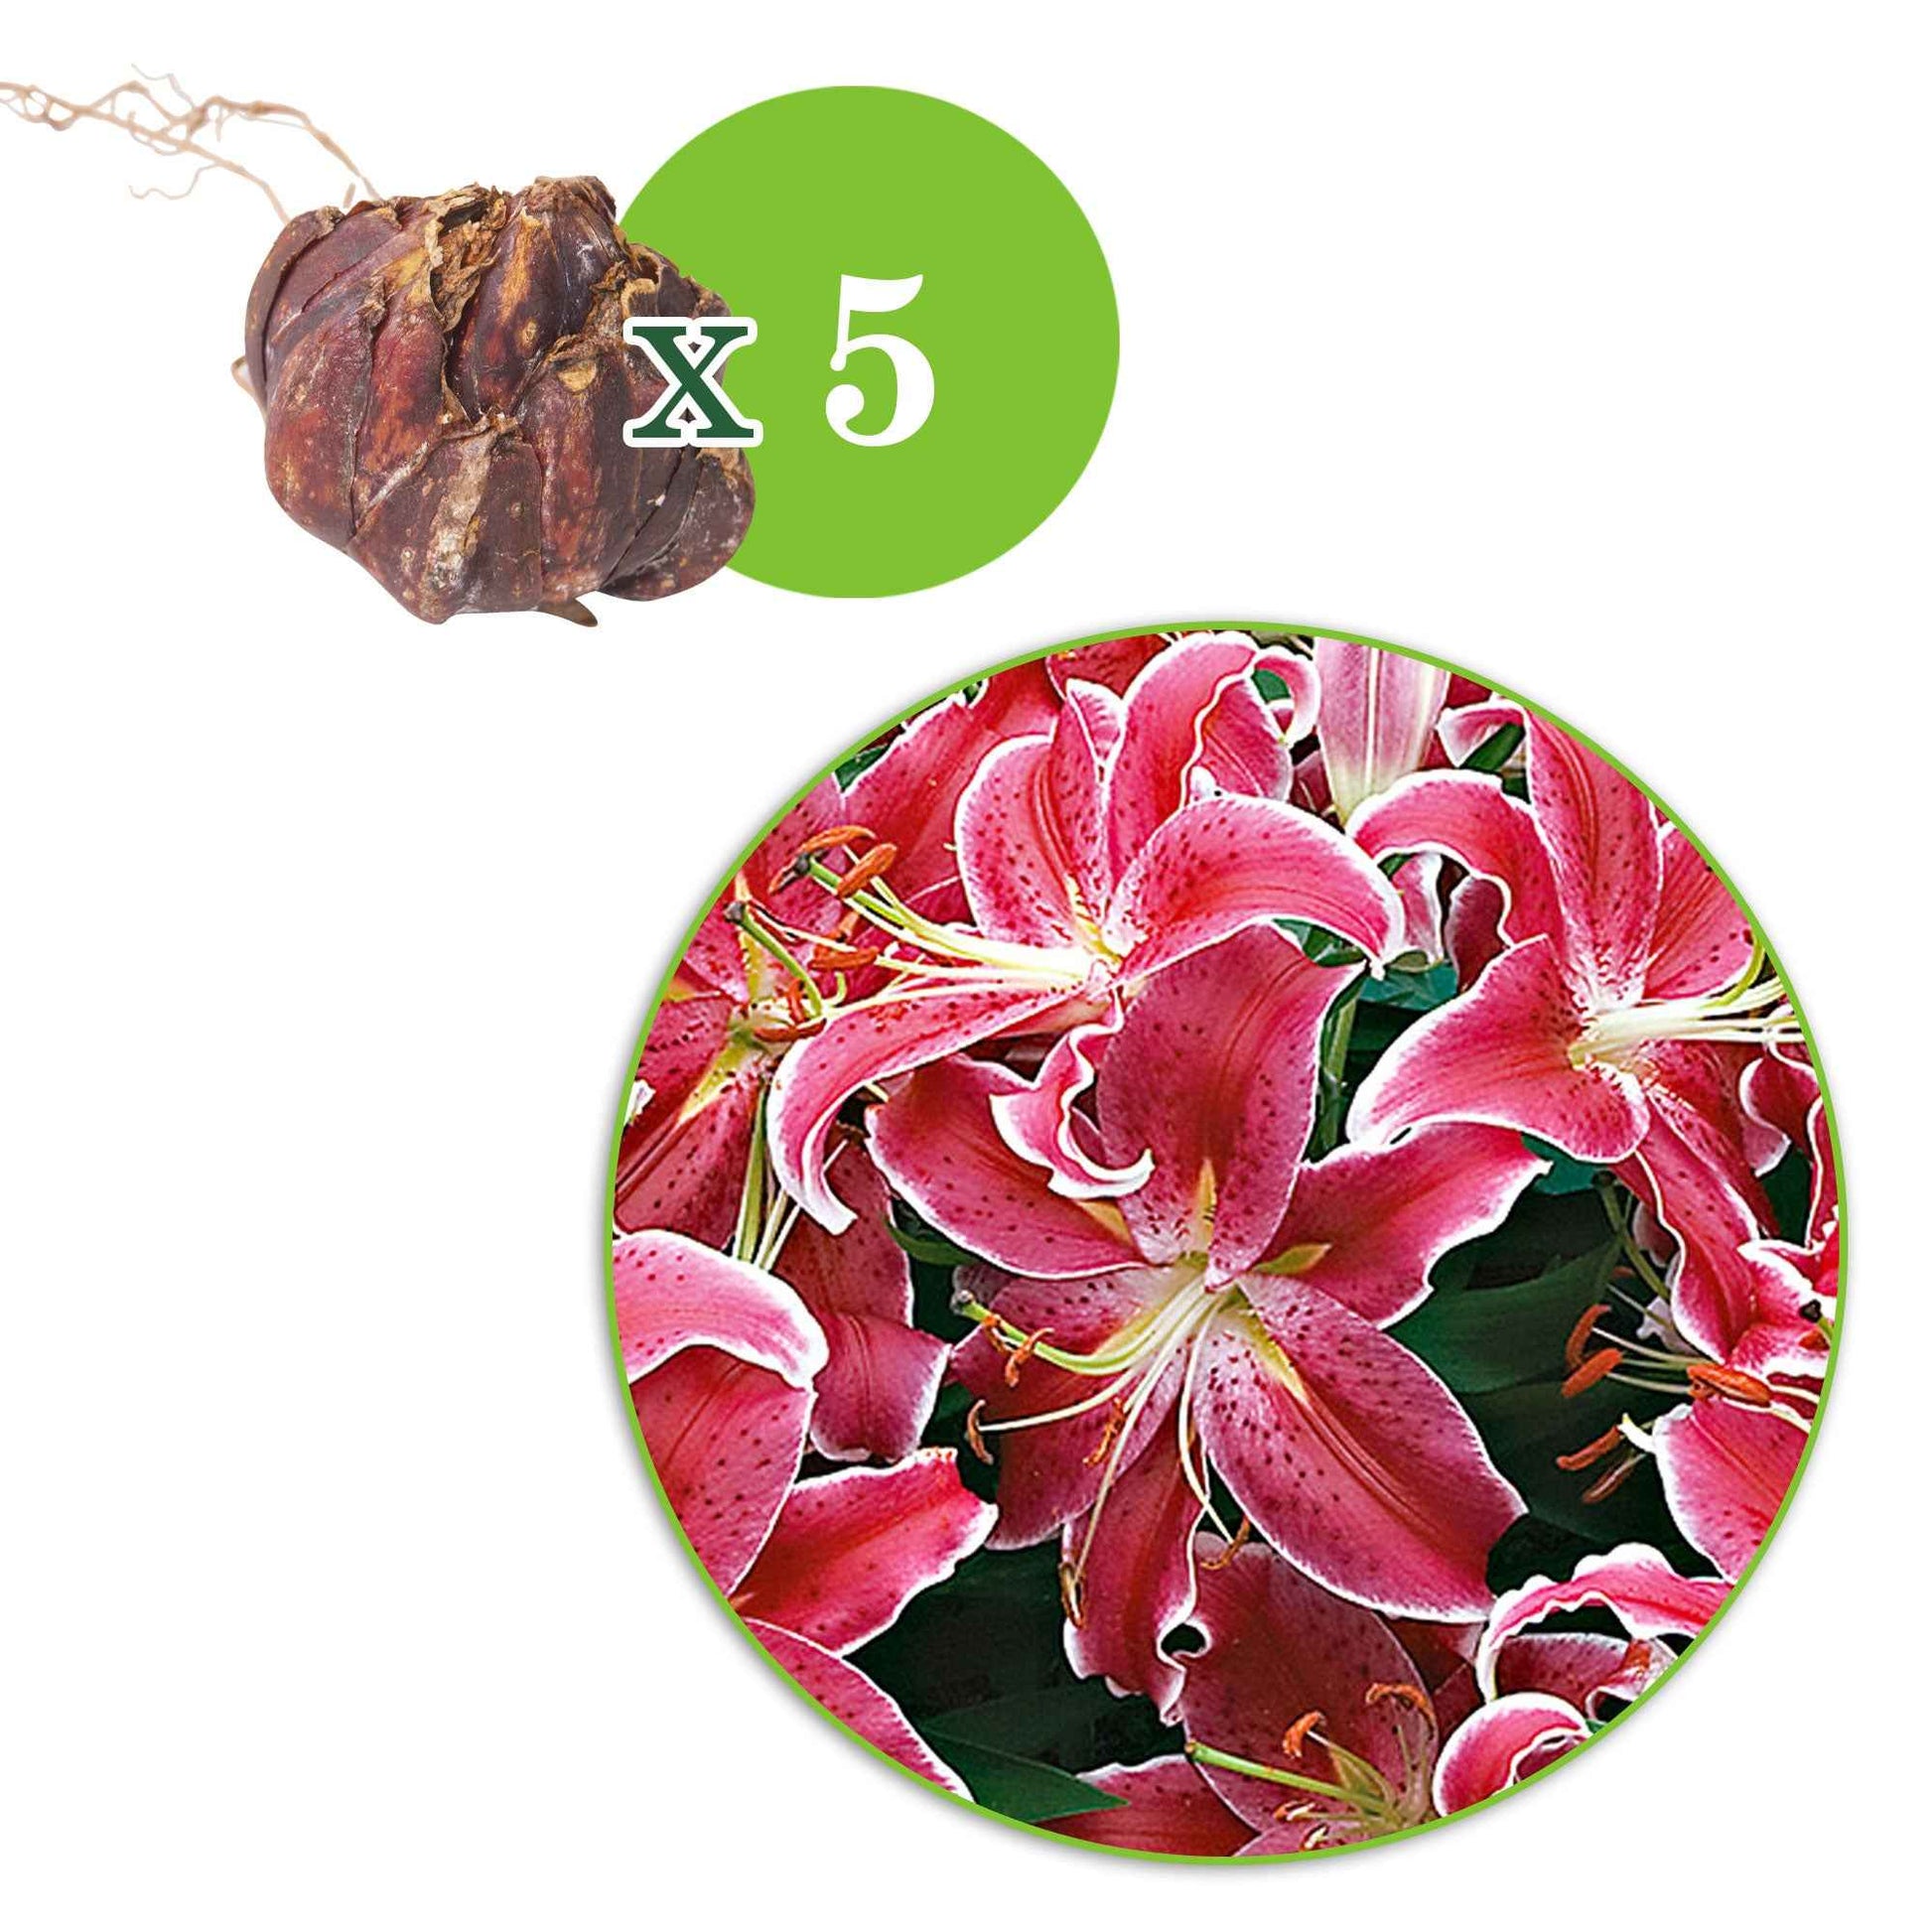 5x Lys 'Starlight Express' rose - Bulbes à fleurs